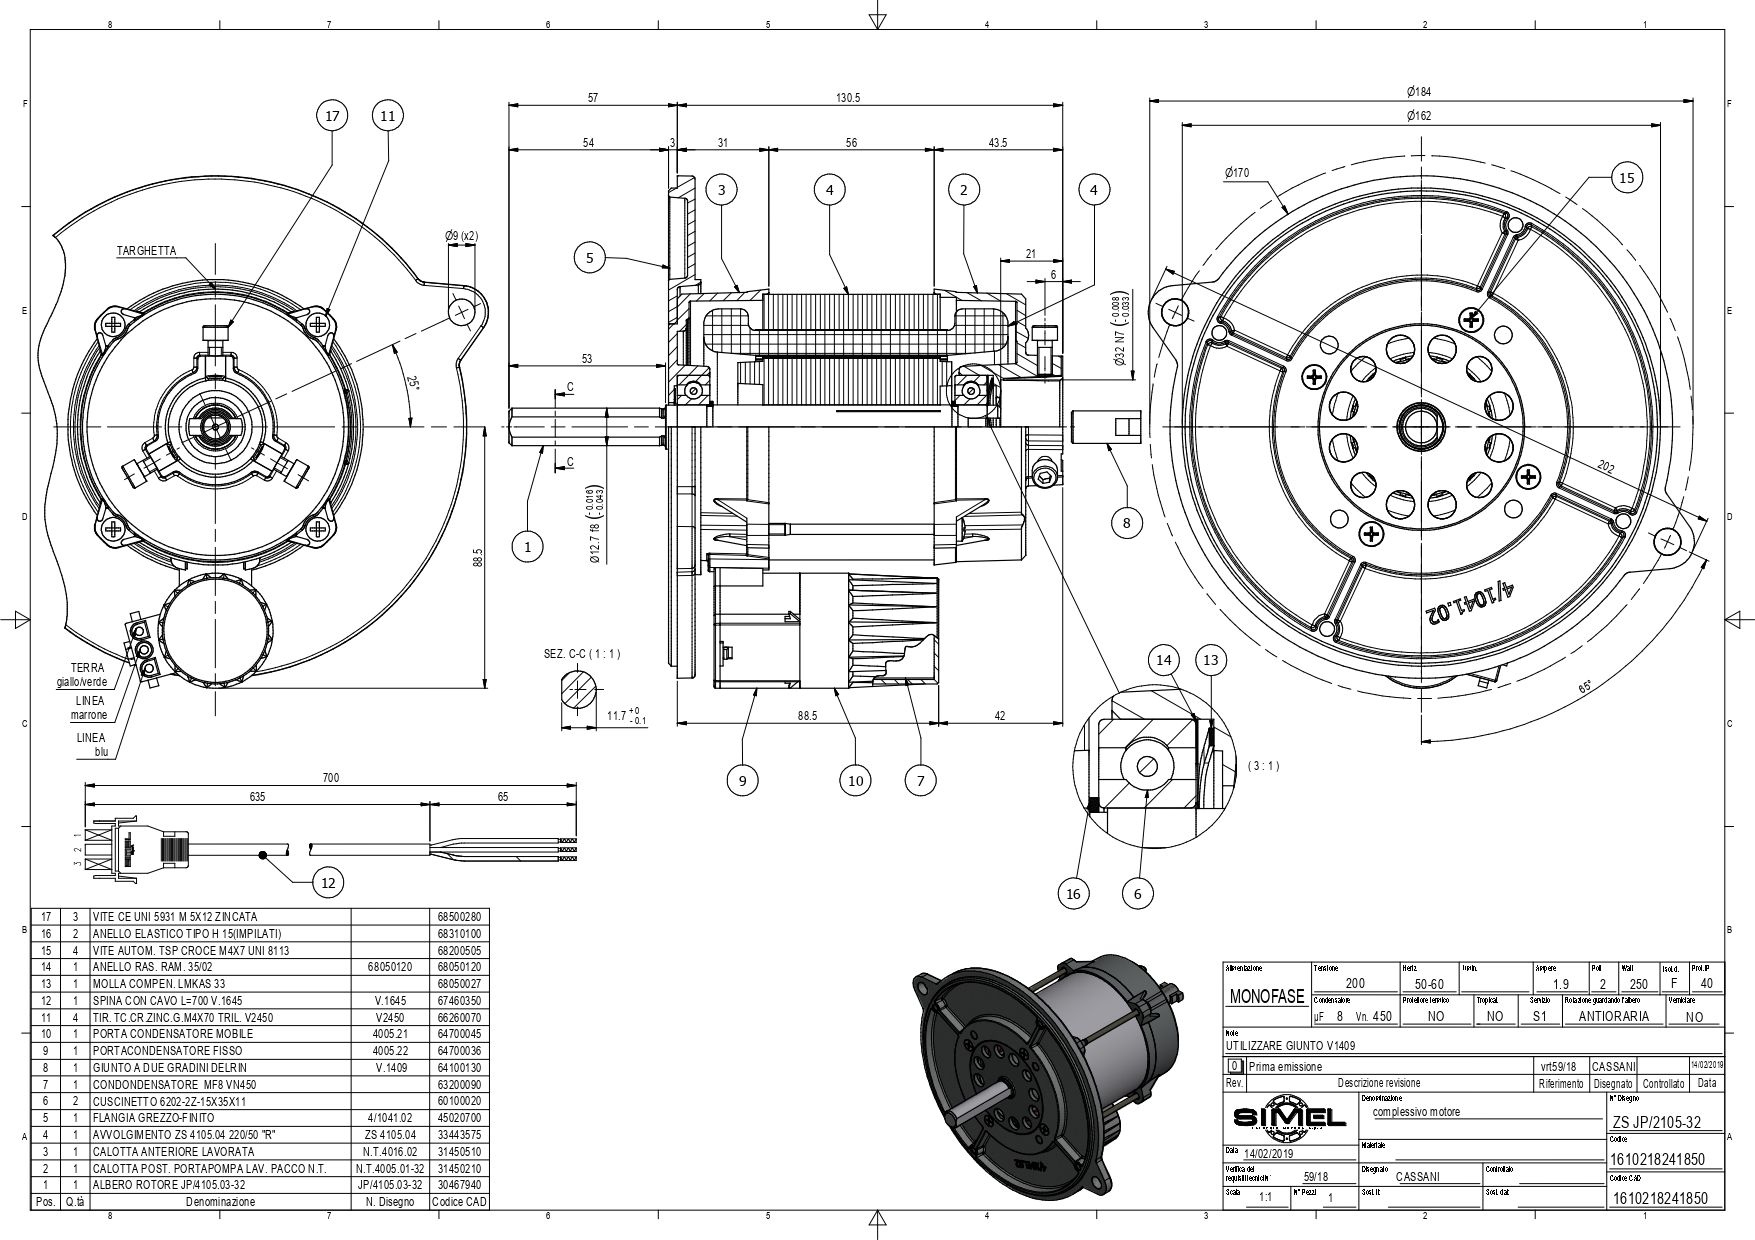 インバーター 400V 2.2kw インバーター(3相モーター制御用) EA940MX-422 - 3